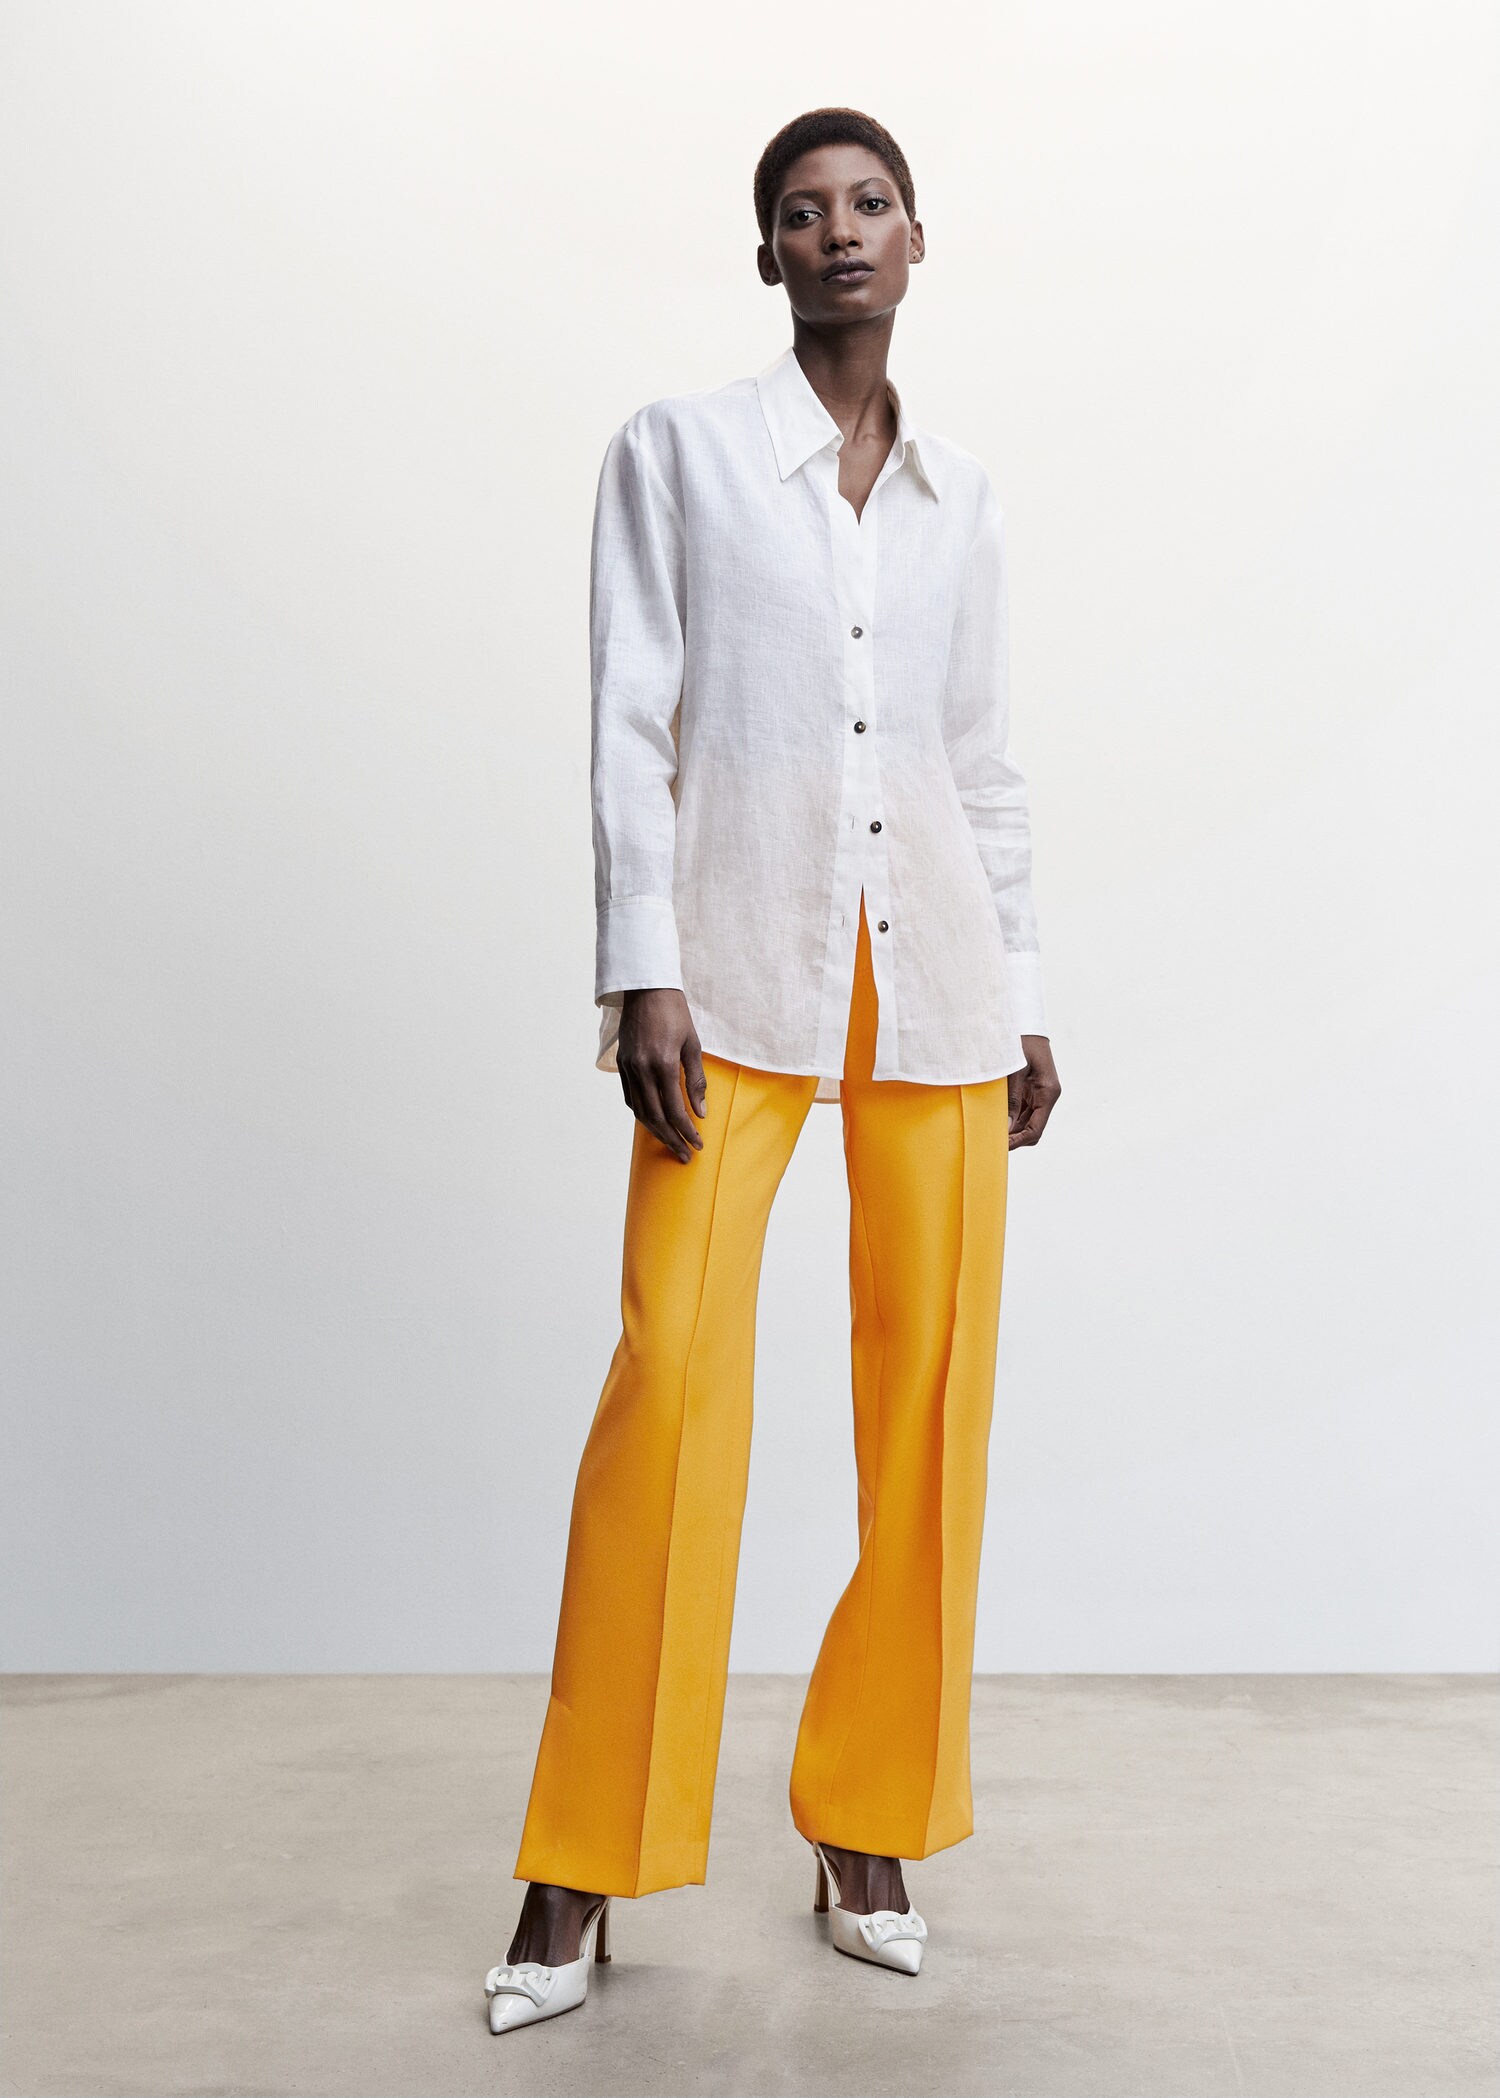 Pantalon de vestir color beige para mujer, elástico, estilo formal